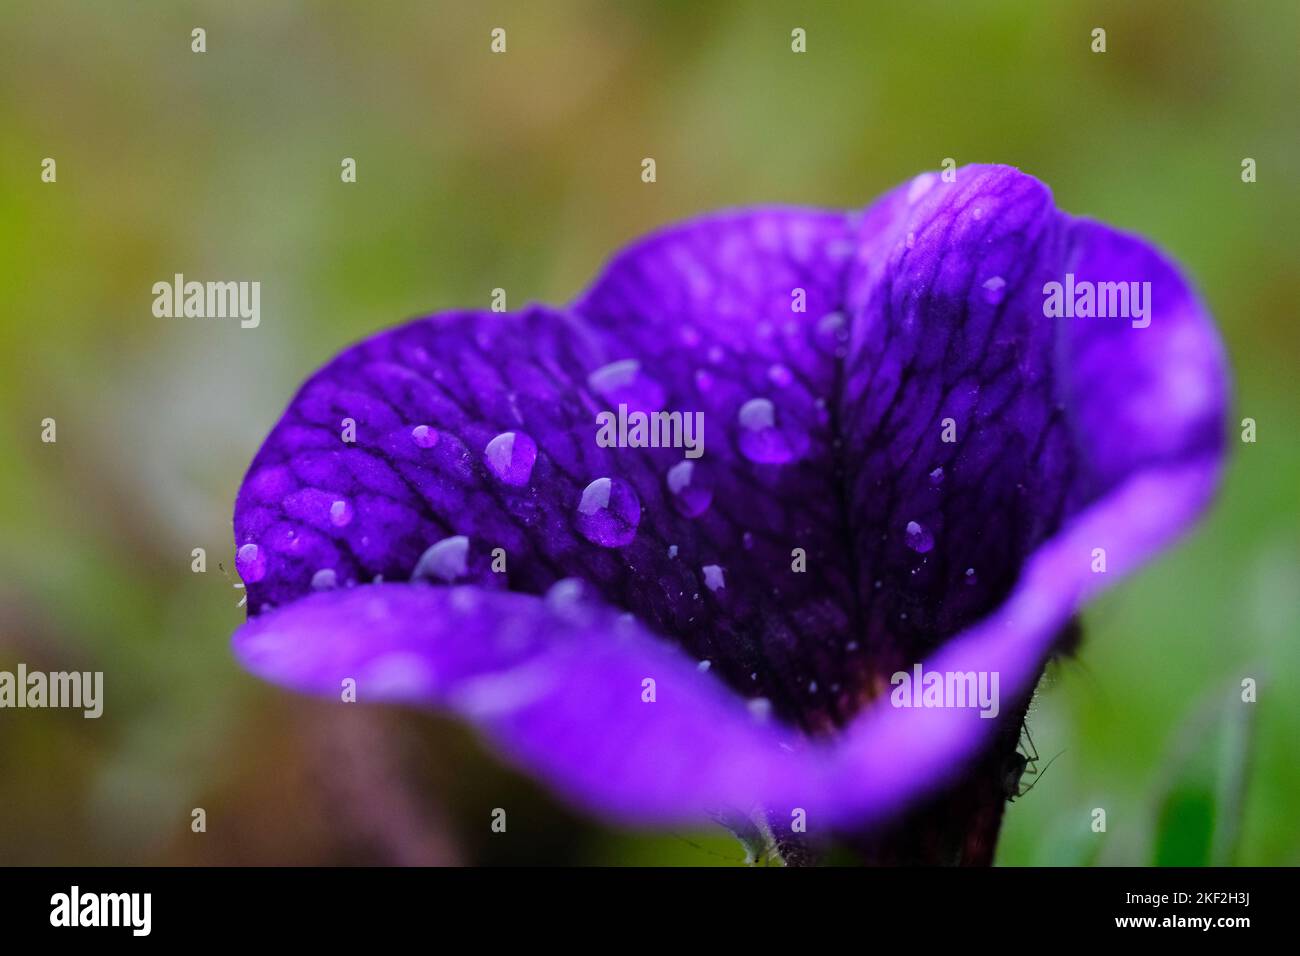 Fiore blu/viola con gocce di pioggia poggiate sui petali. Giardino in estate. Immagine macro. Foto Stock